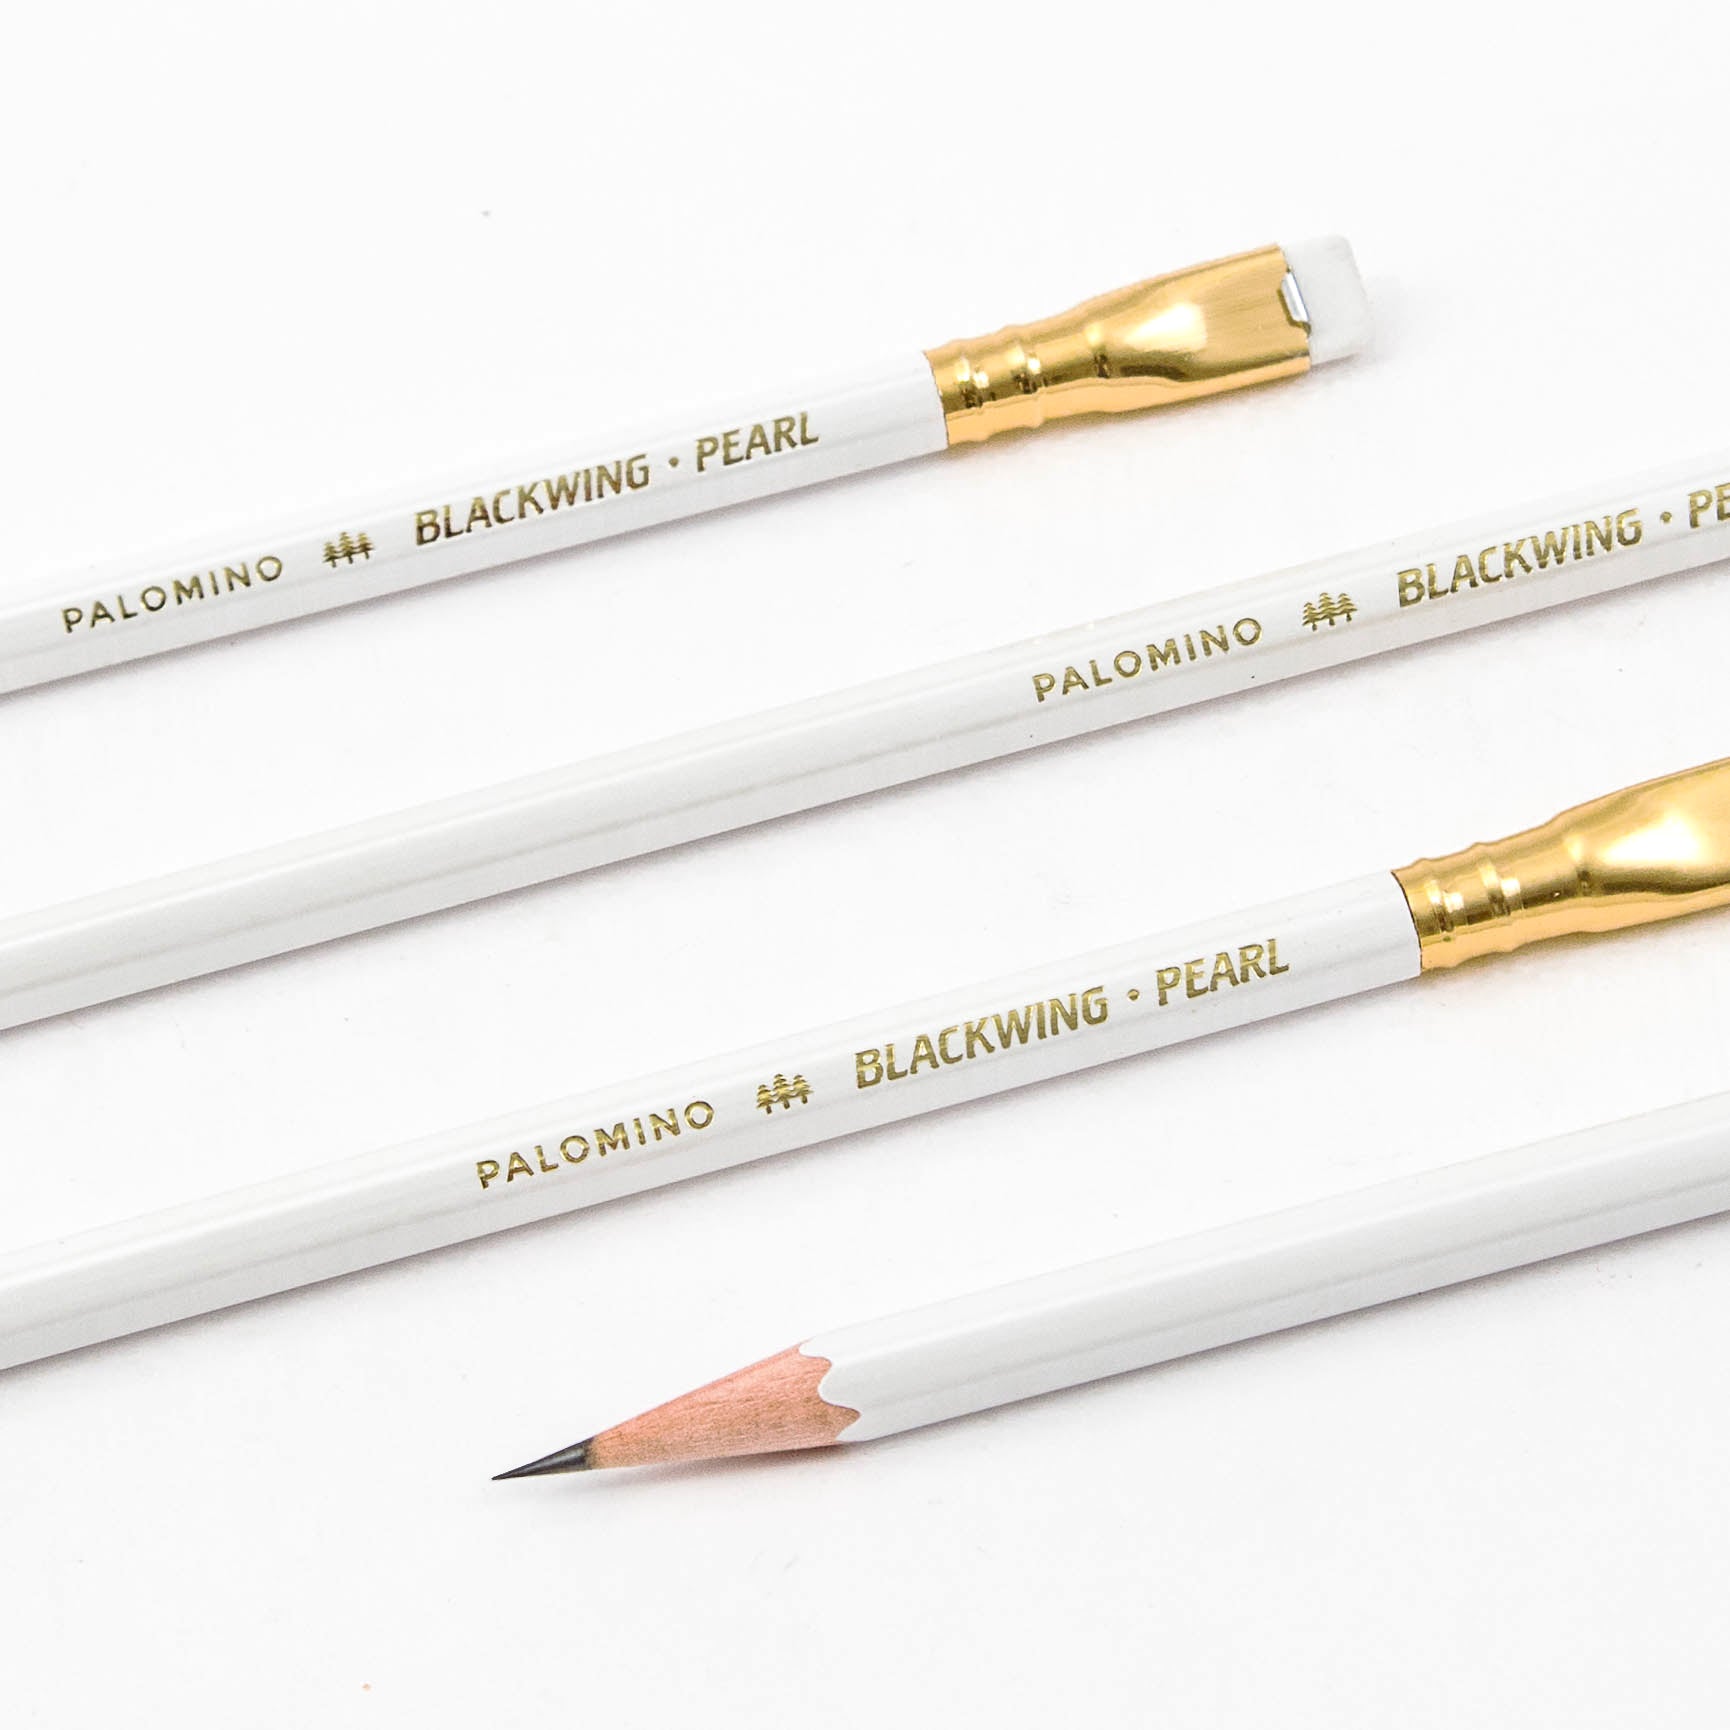 Blackwing Pearl Pencils, 12 pack